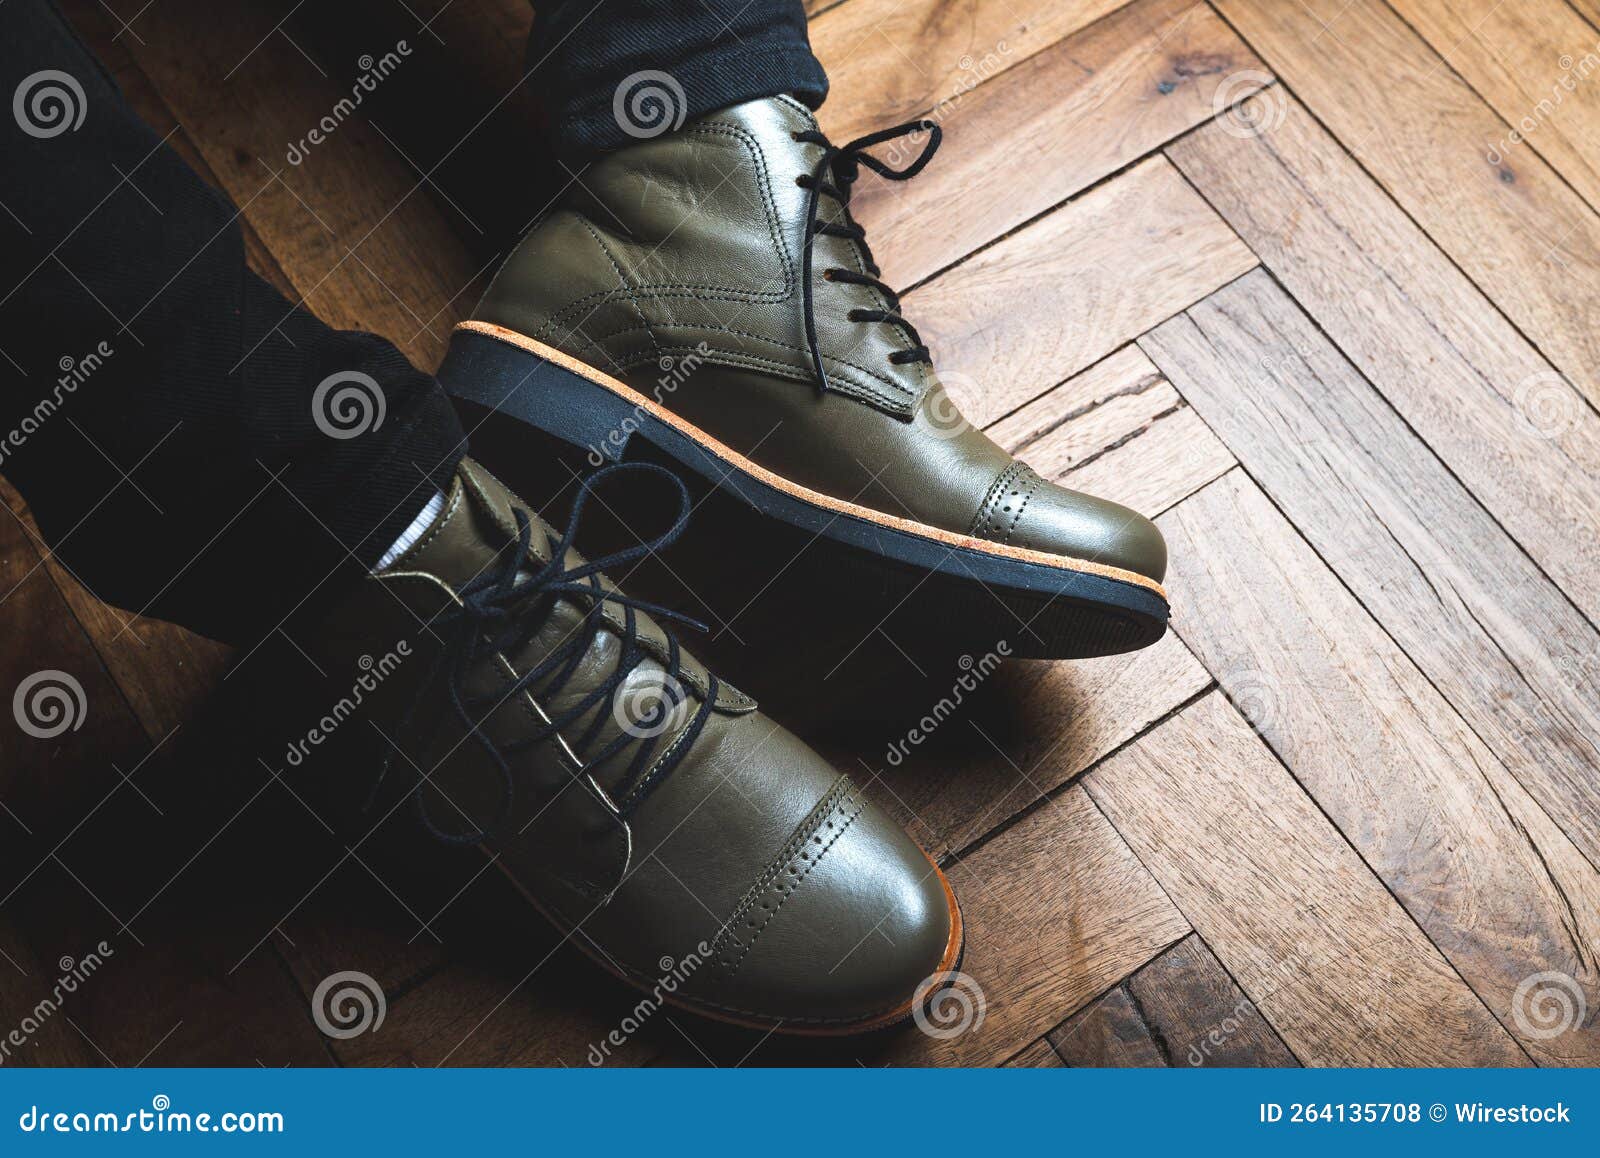 botas zapatos de cuero mujer con suela de goma